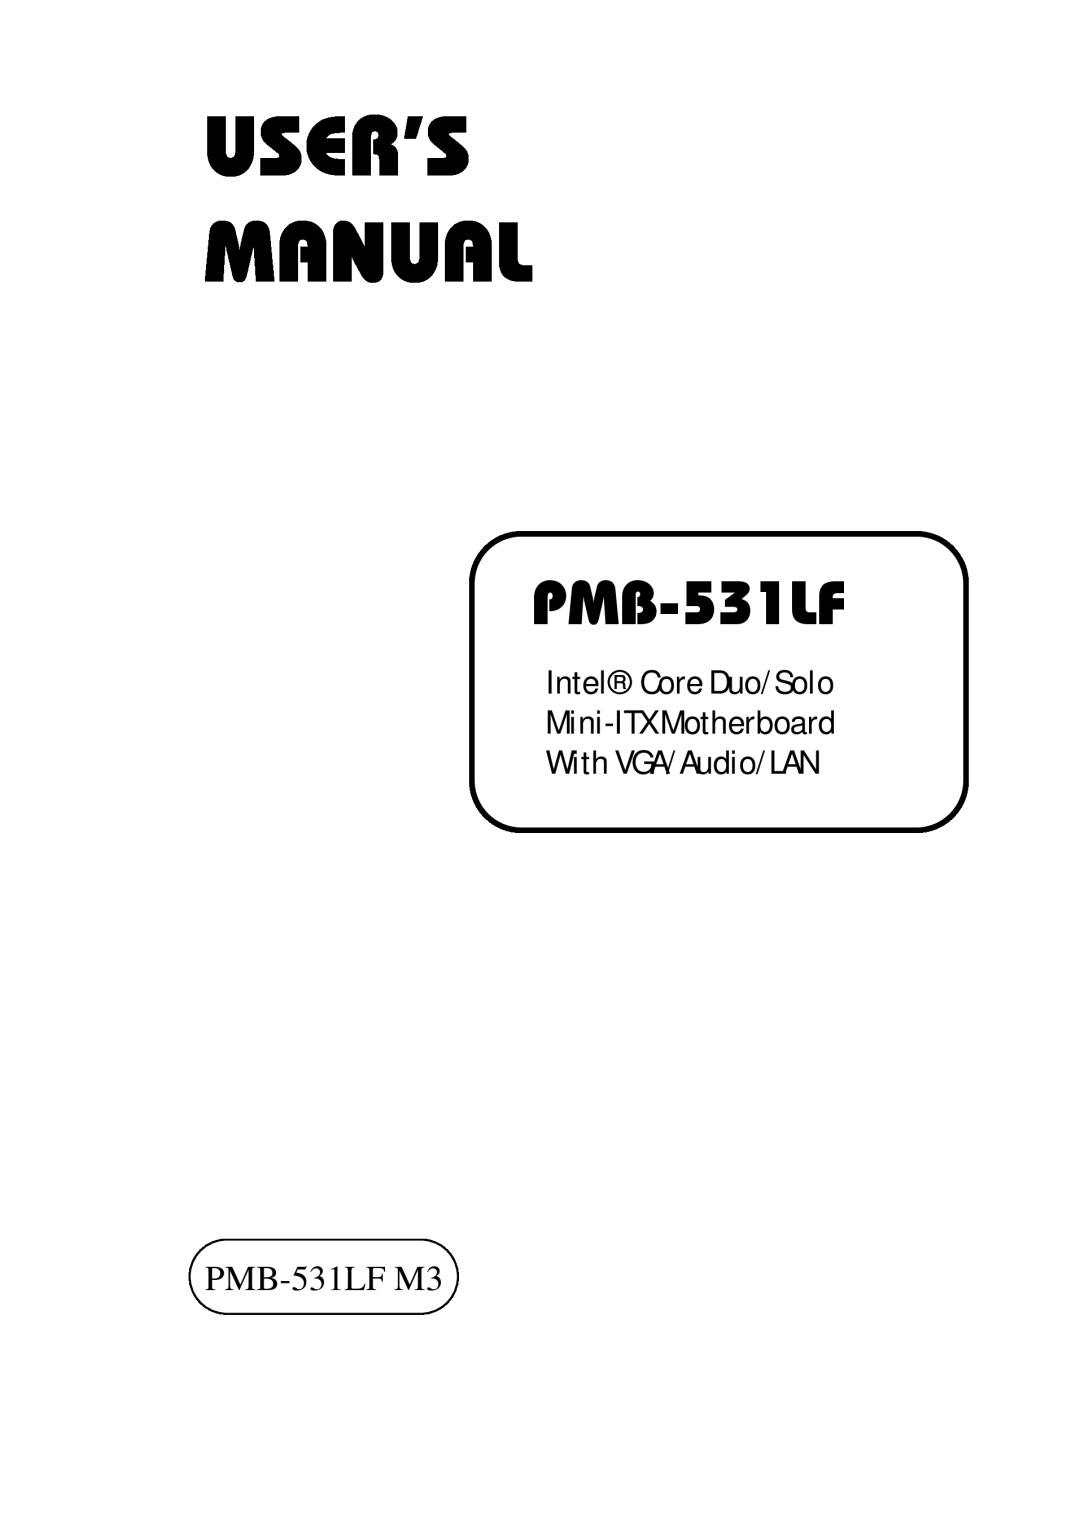 Intel user manual PMB-531LFM3, Intel Core Duo/Solo Mini-ITXMotherboard, With VGA/Audio/LAN 